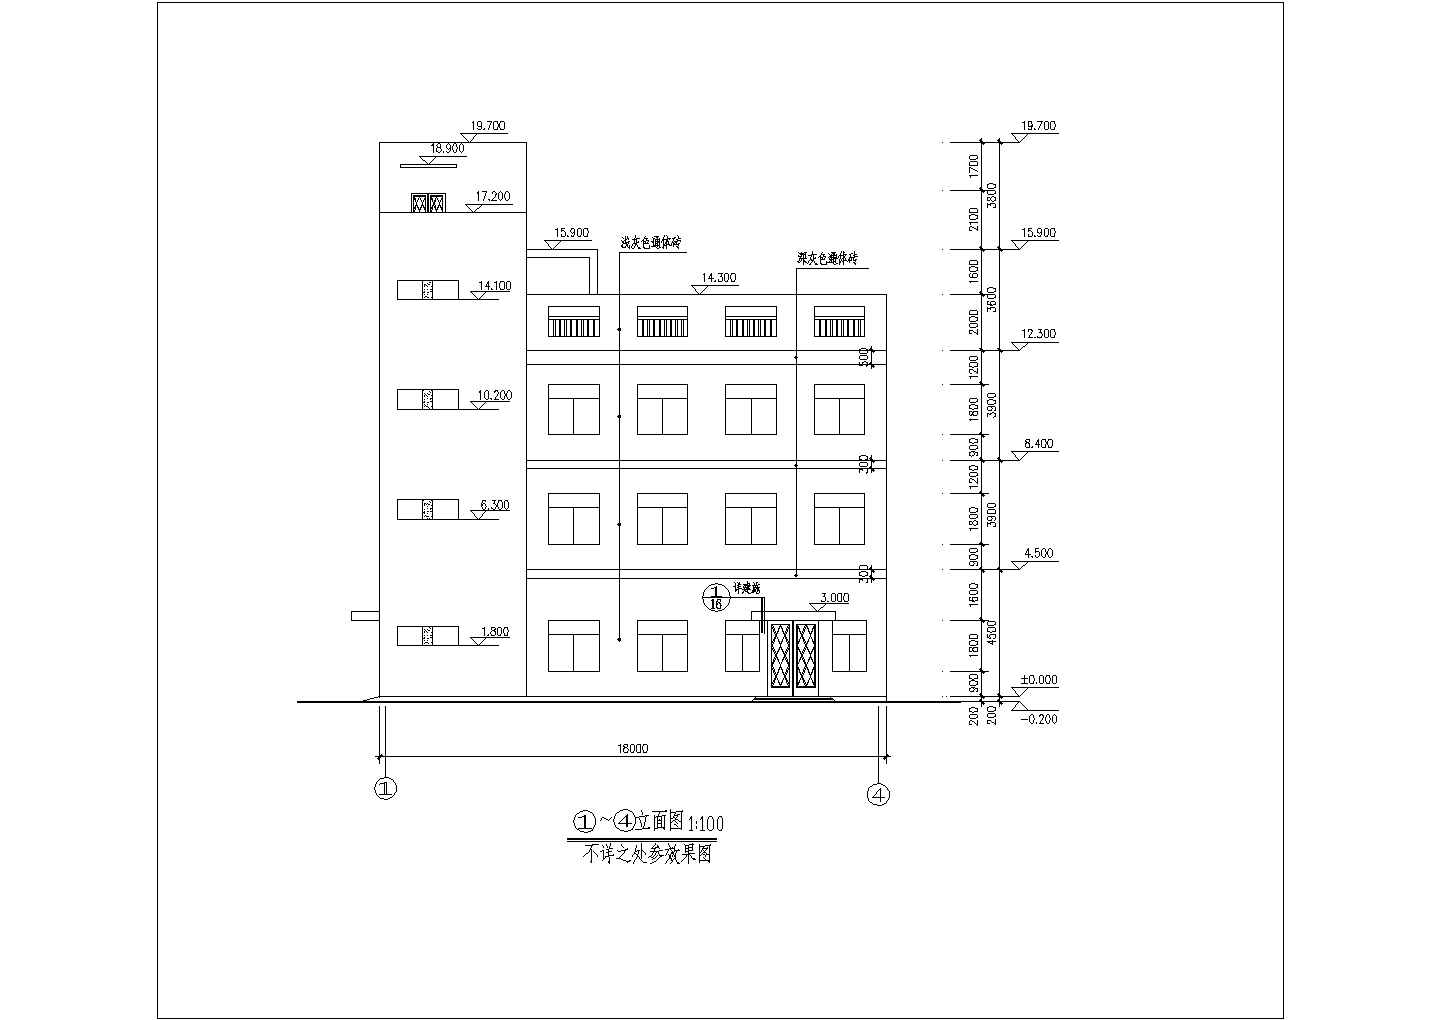 晋江市三层框架结构医院洗衣房建筑设计施工图